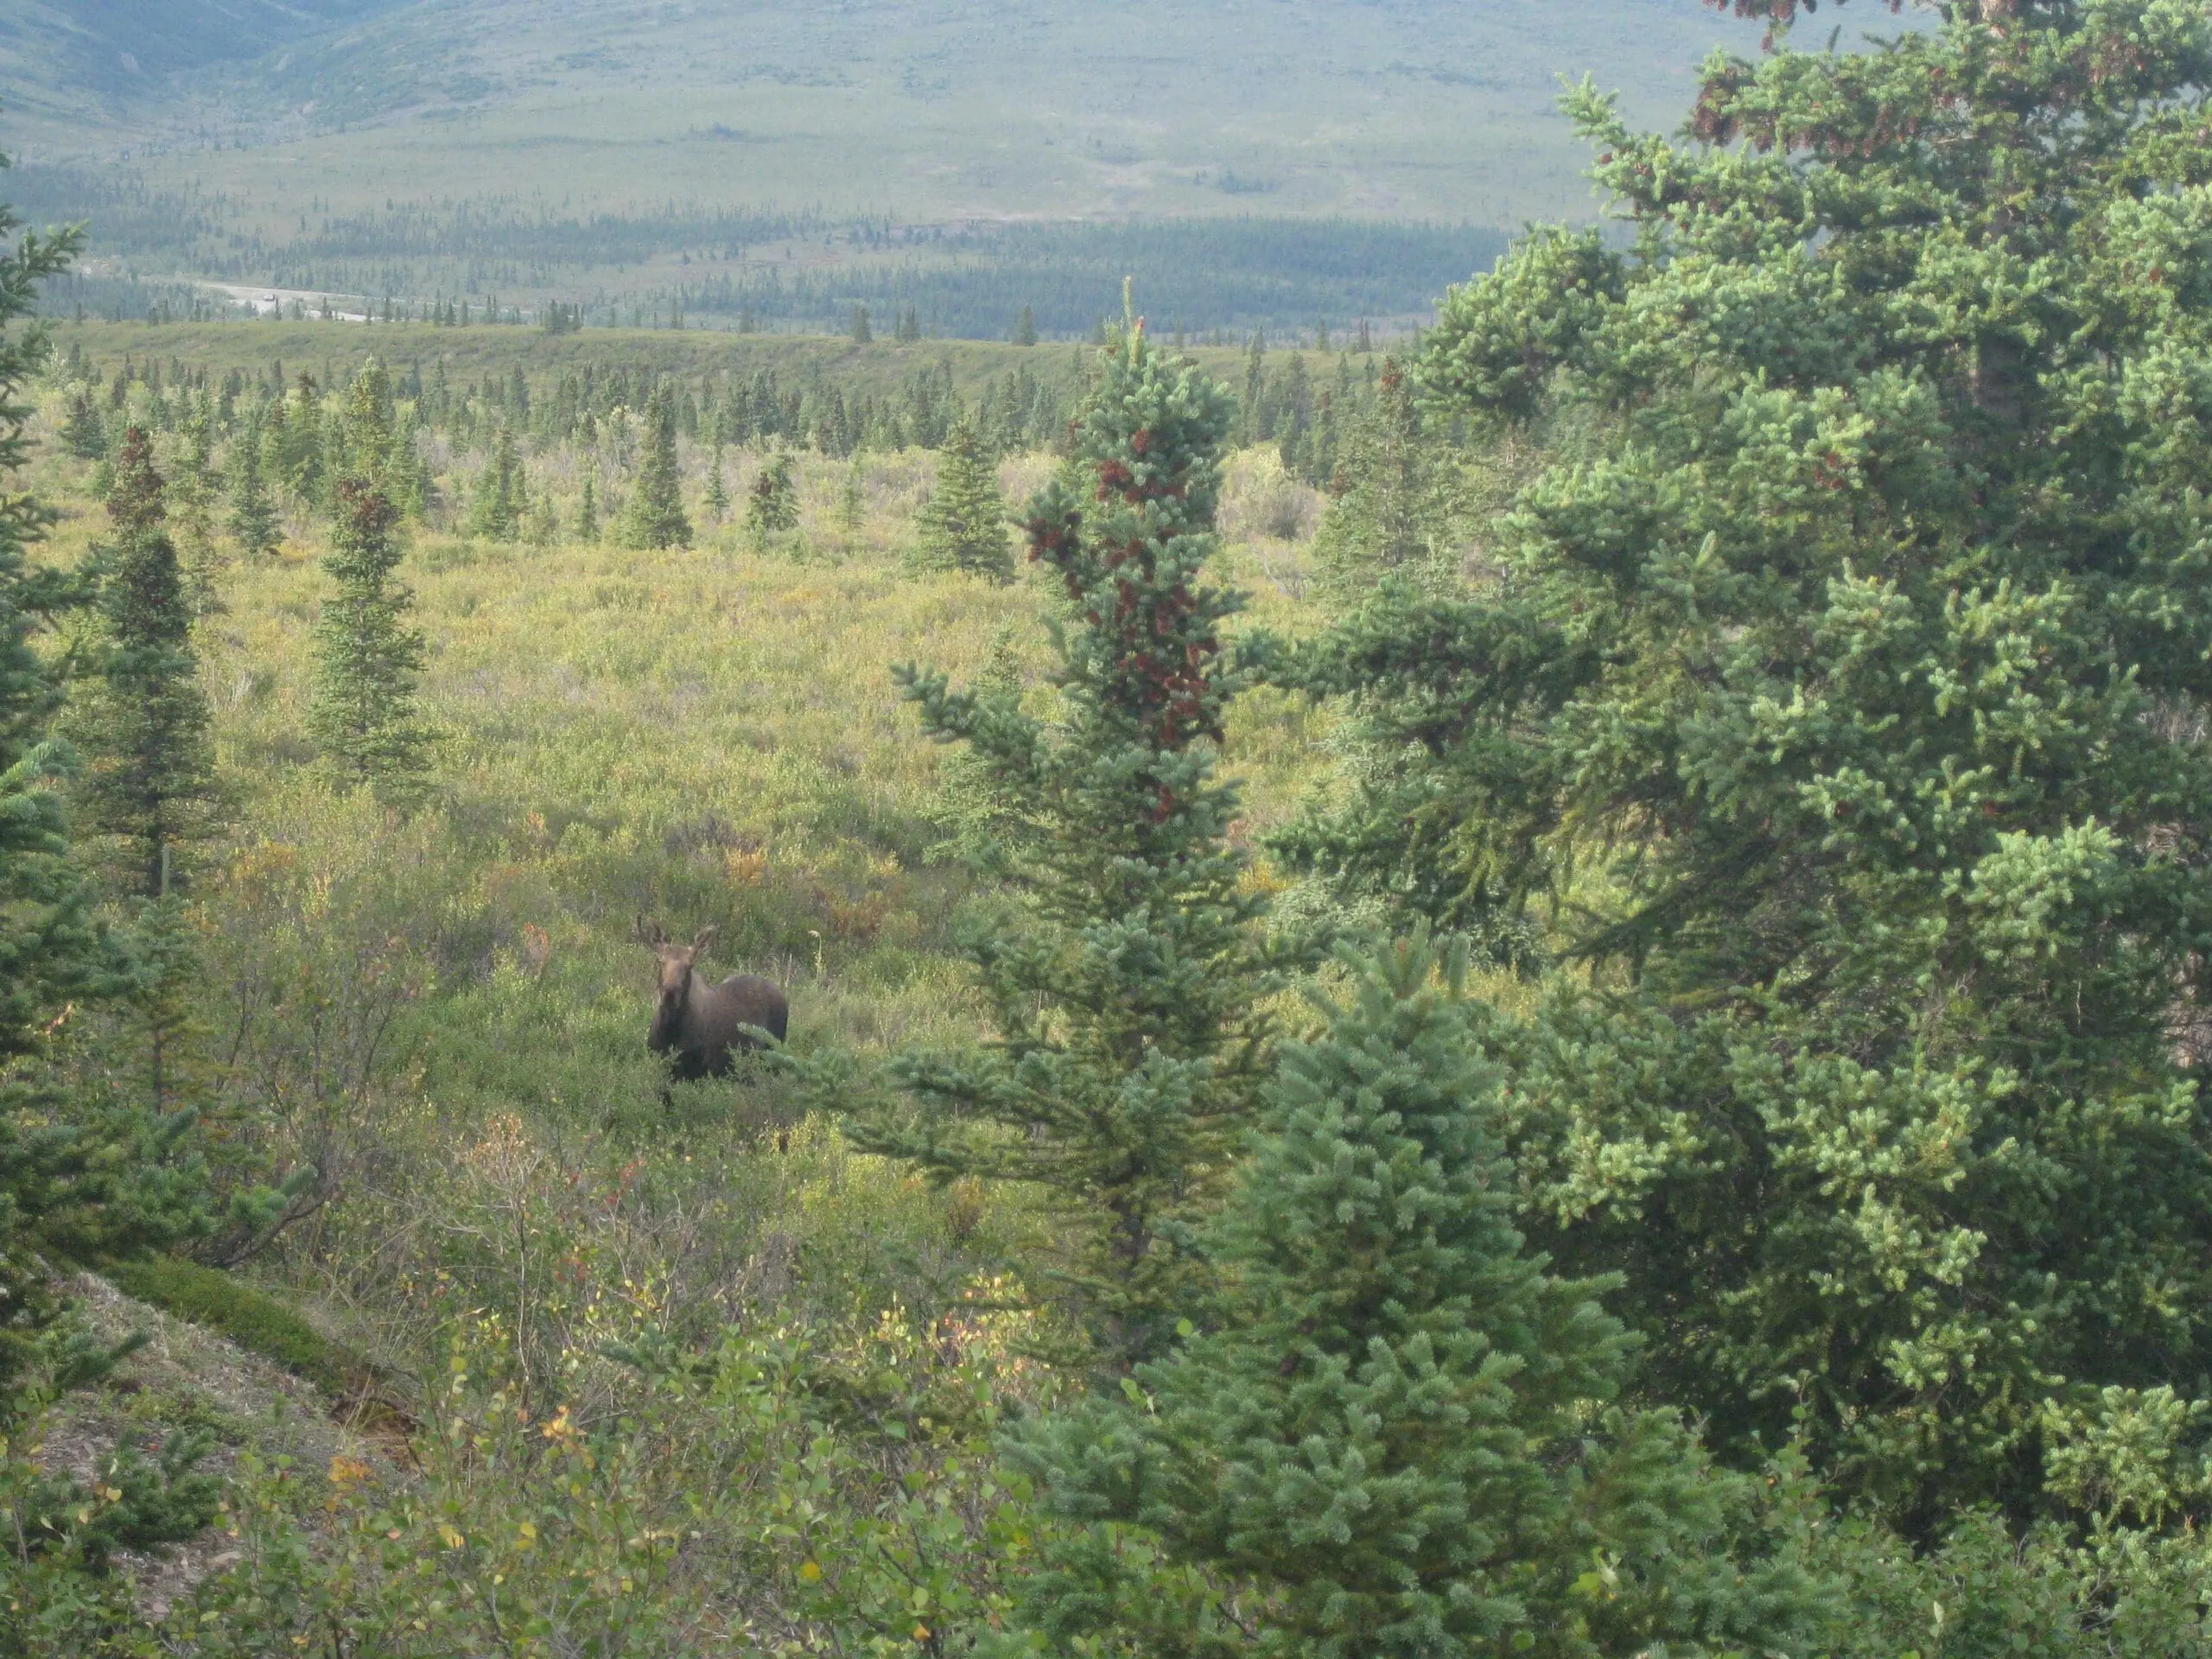 Moose walking through forest. 